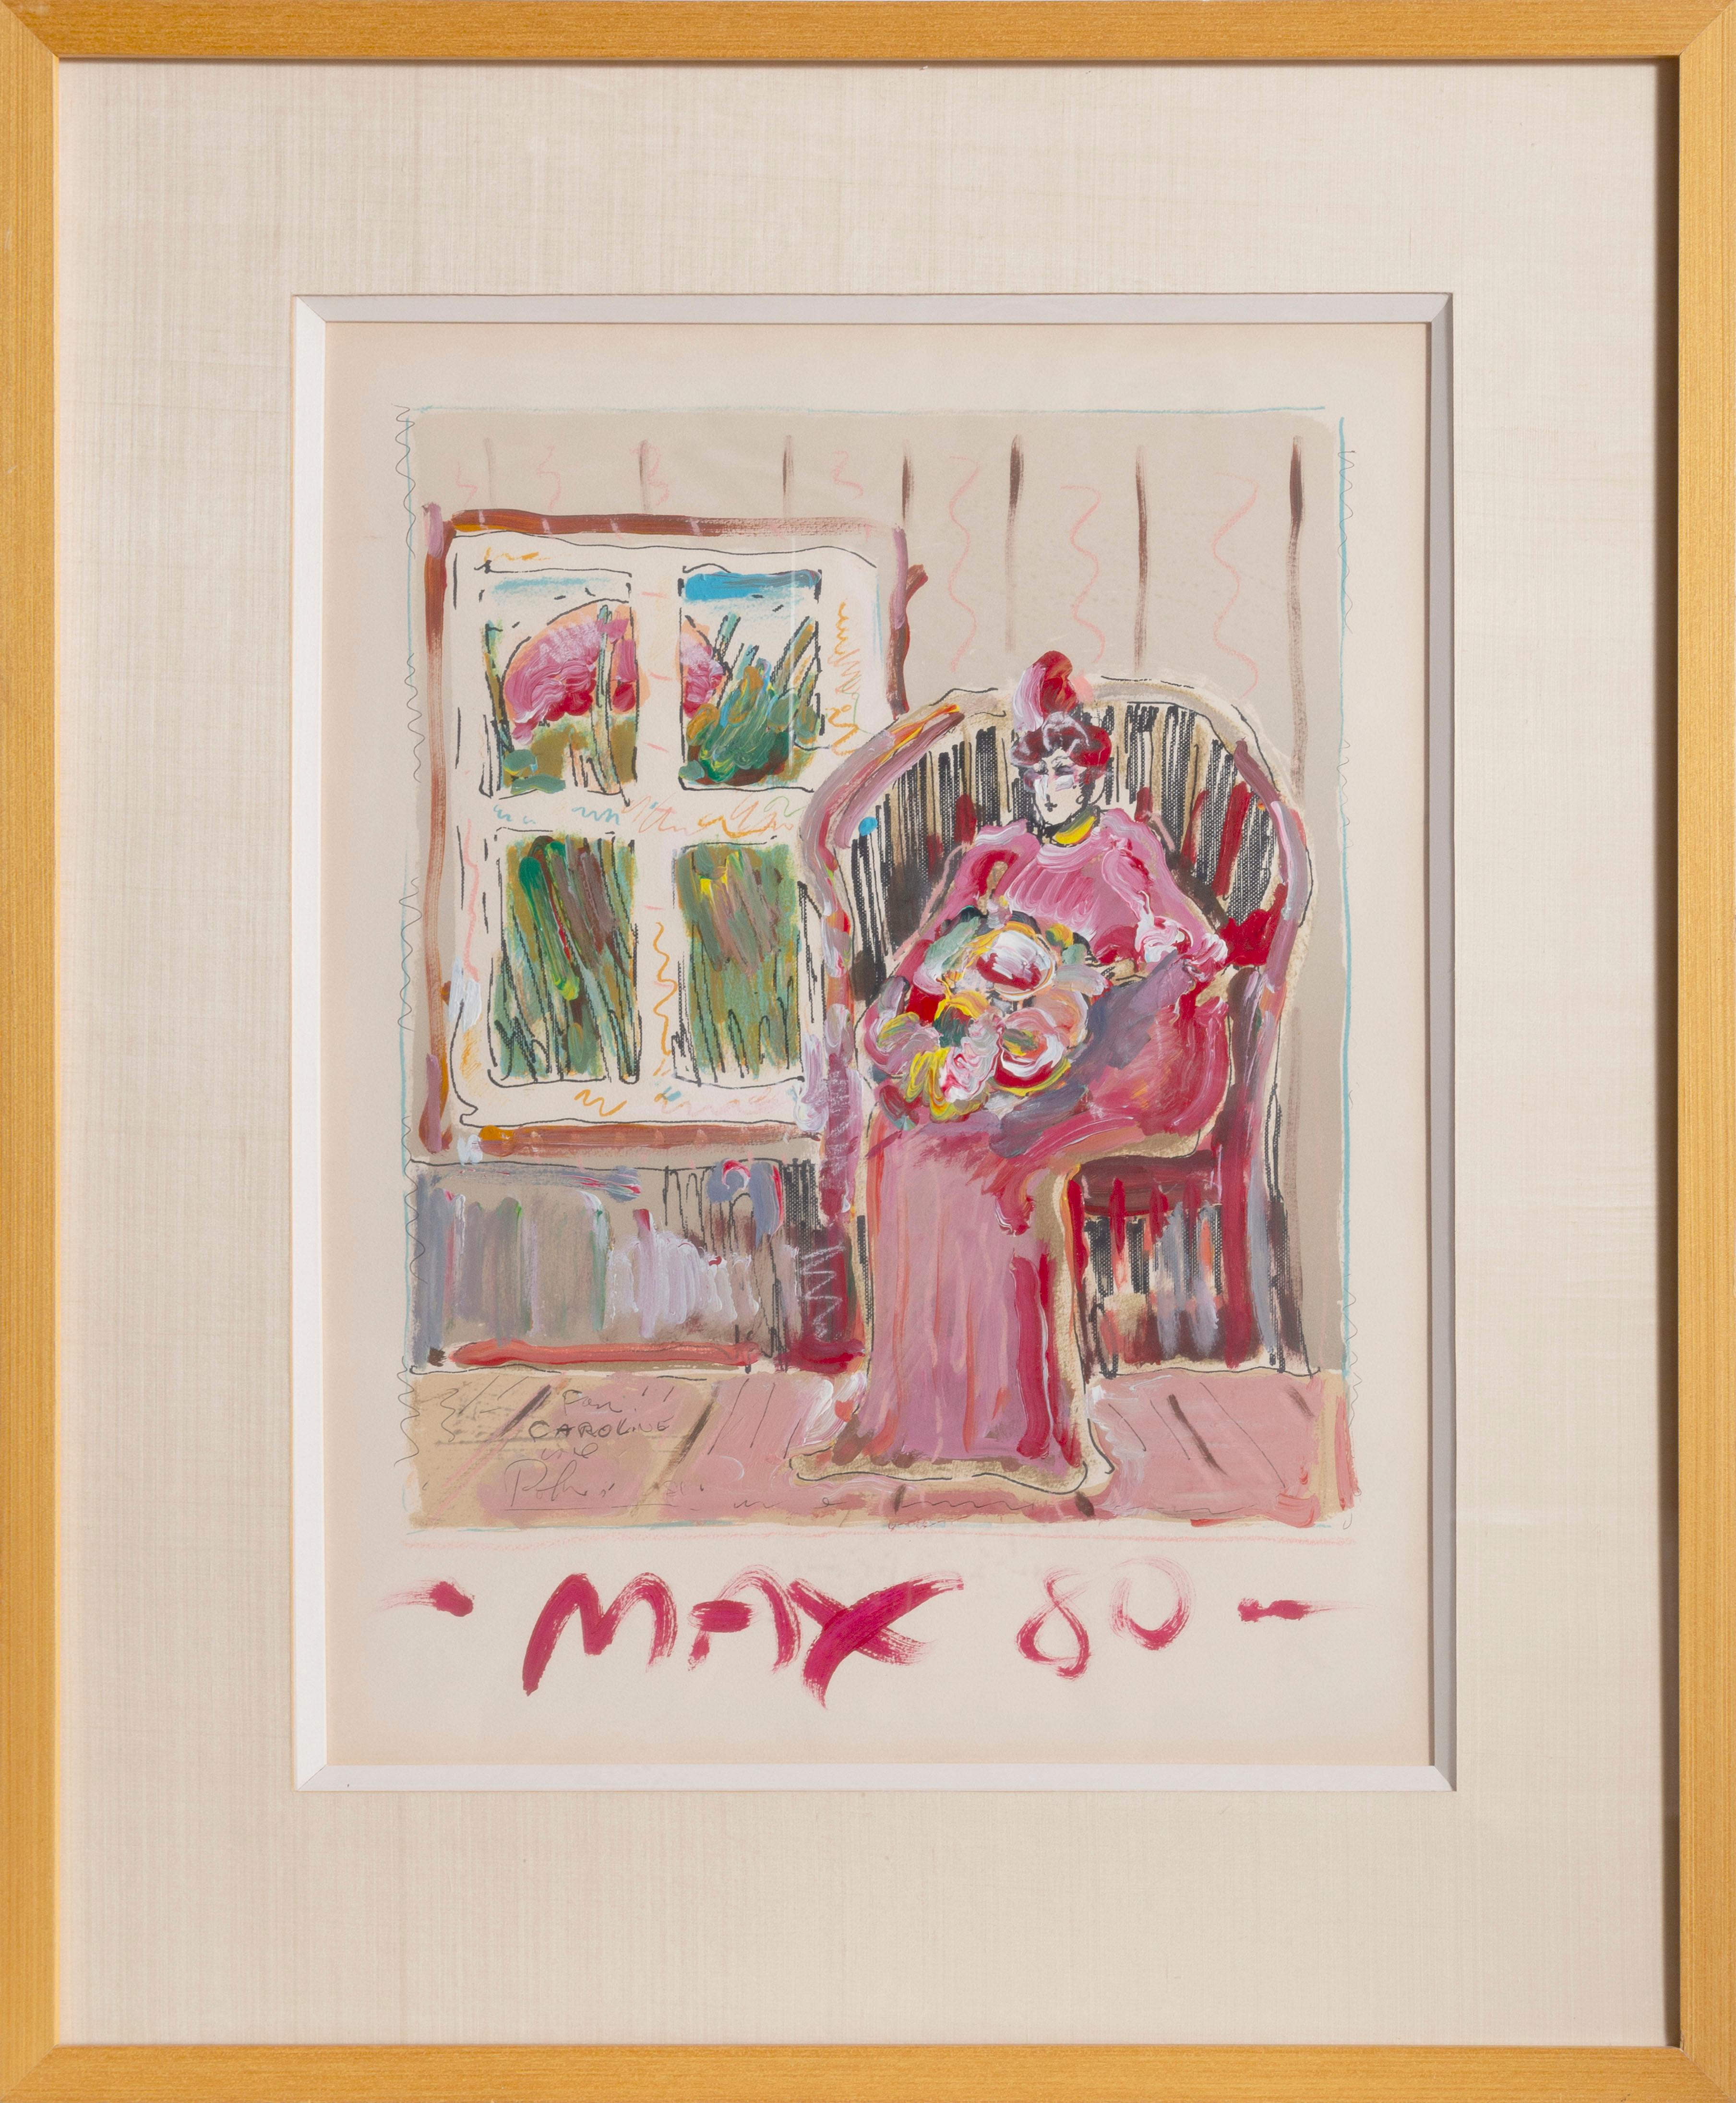 Artiste : Peter Max, allemand/américain (1937 - )
Titre : Femme assise
Année : 1980
Moyen : Lithographie avec de nombreuses peintures à la main, signée et datée à la peinture, dédiée à Carolyn
Taille : 25 x 19 pouces
Taille du cadre : 37,5 x 30,5